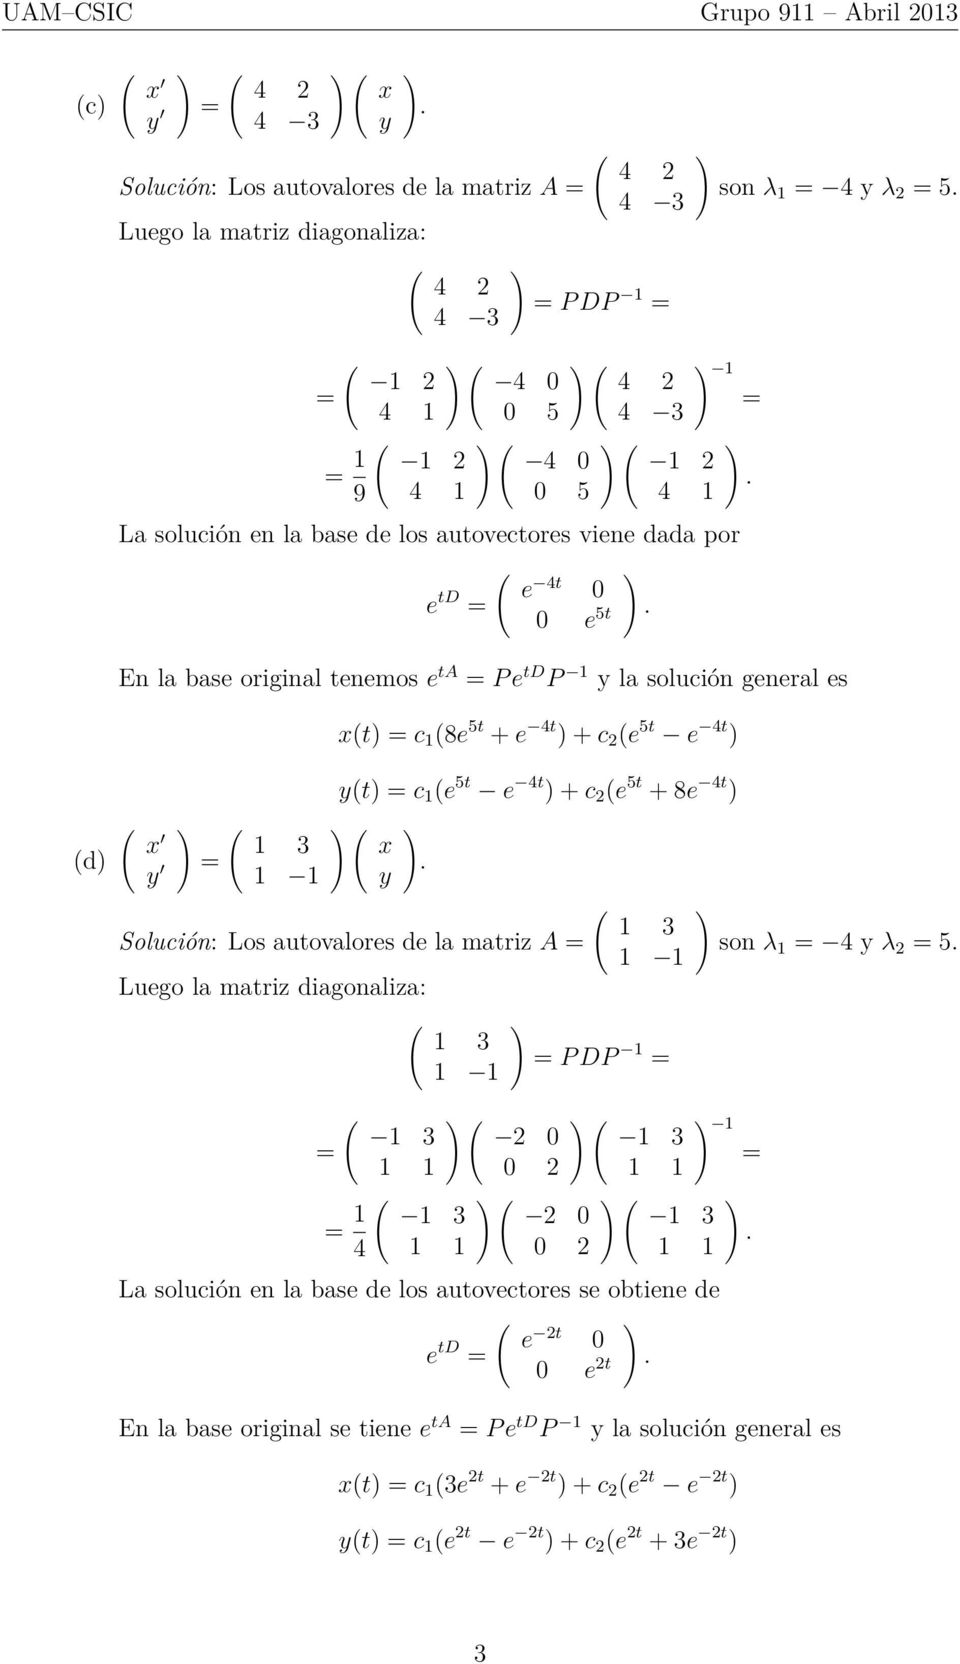 t c 1 e 5t e 4t + c 2 e 5t + 8e 4t Solución: Los autovalores de la matriz A Luego la matriz diagonaliza: 1 1 P DP 1 son λ 1 4 λ 2 5 1 1 1 0 2 1 1 1 4 0 2 La solución en la base de